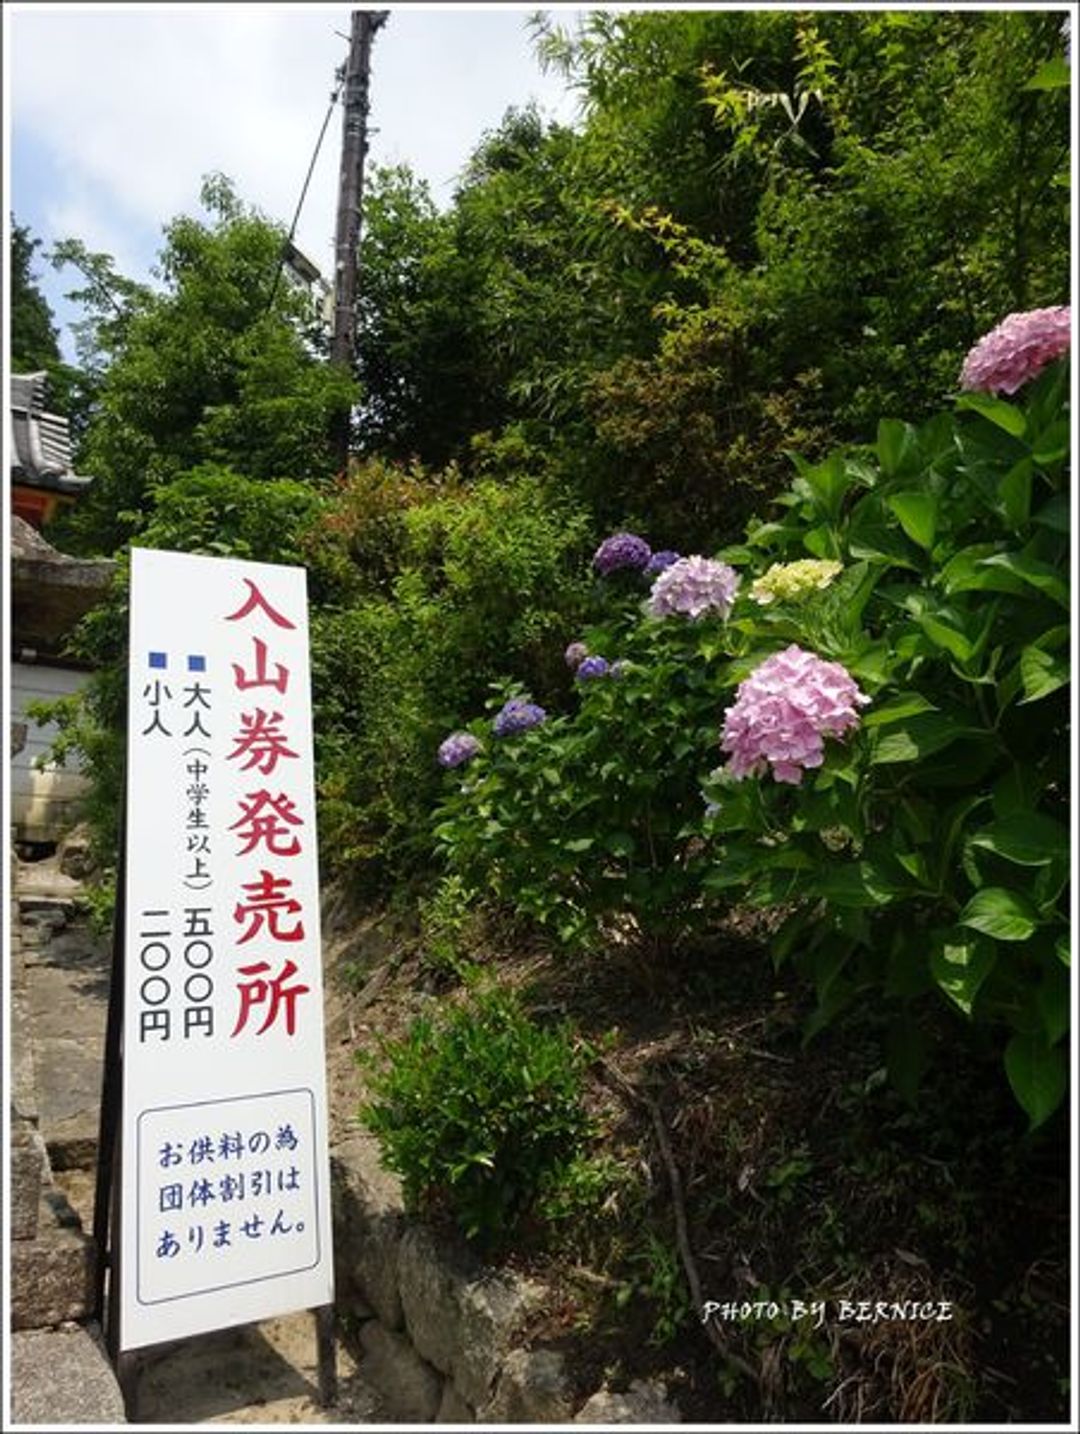 日本花卉 奈良大和郡山紫陽花名所 矢田寺 日本 關西 旅行酒吧